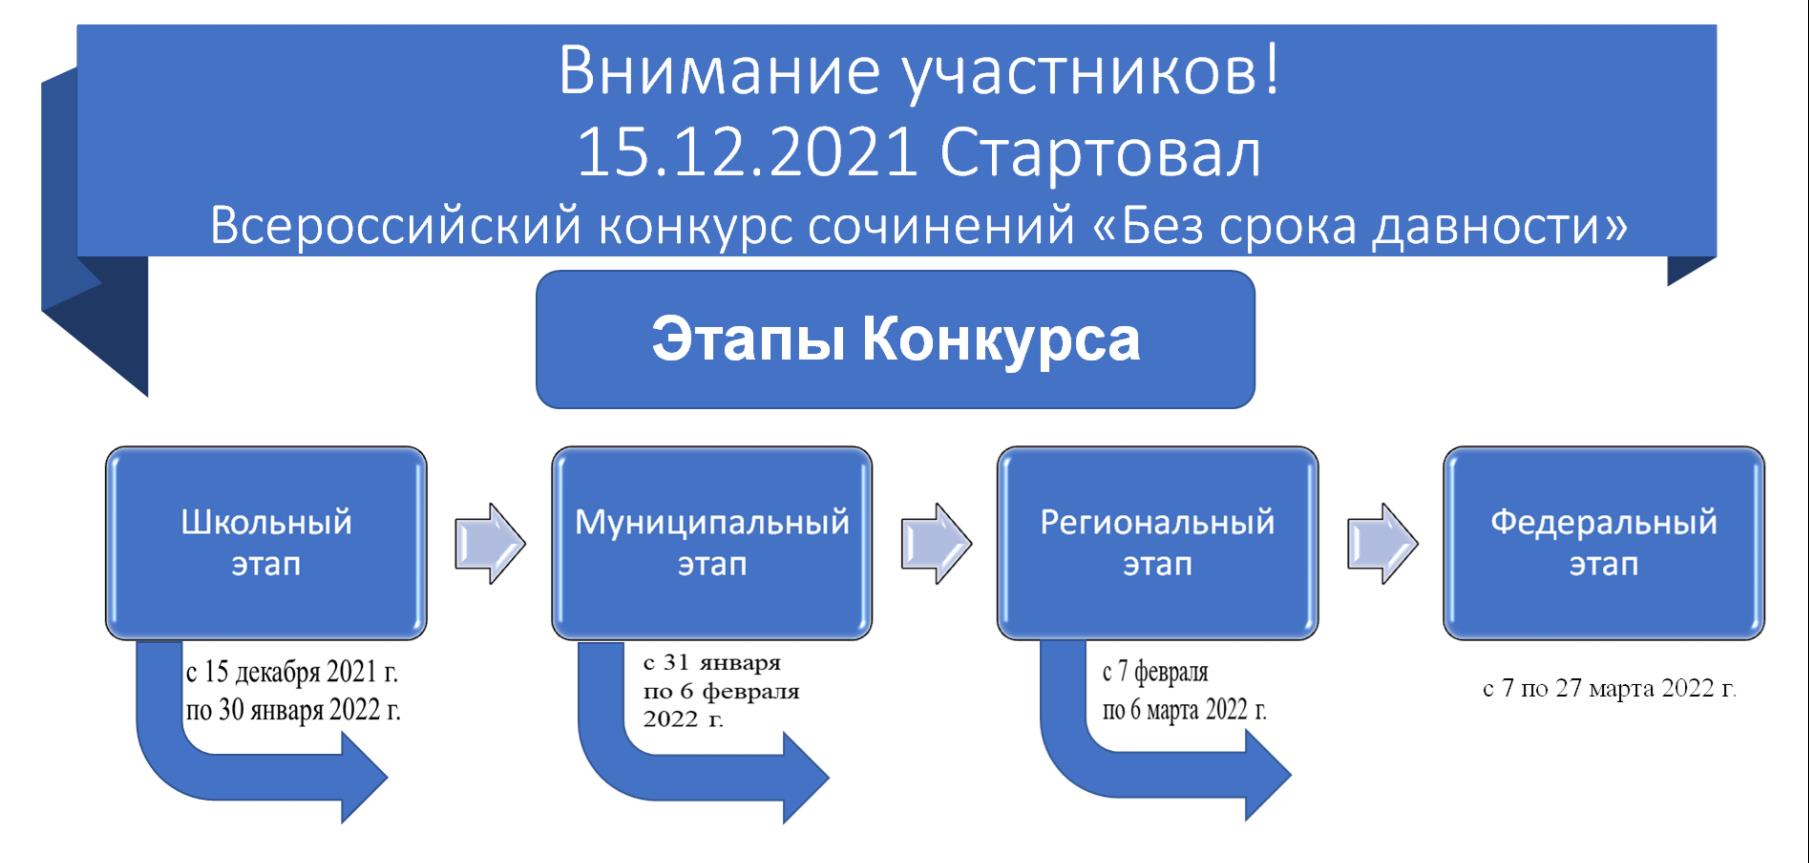 Федеральный Этап Всероссийского Конкурса Сочинений